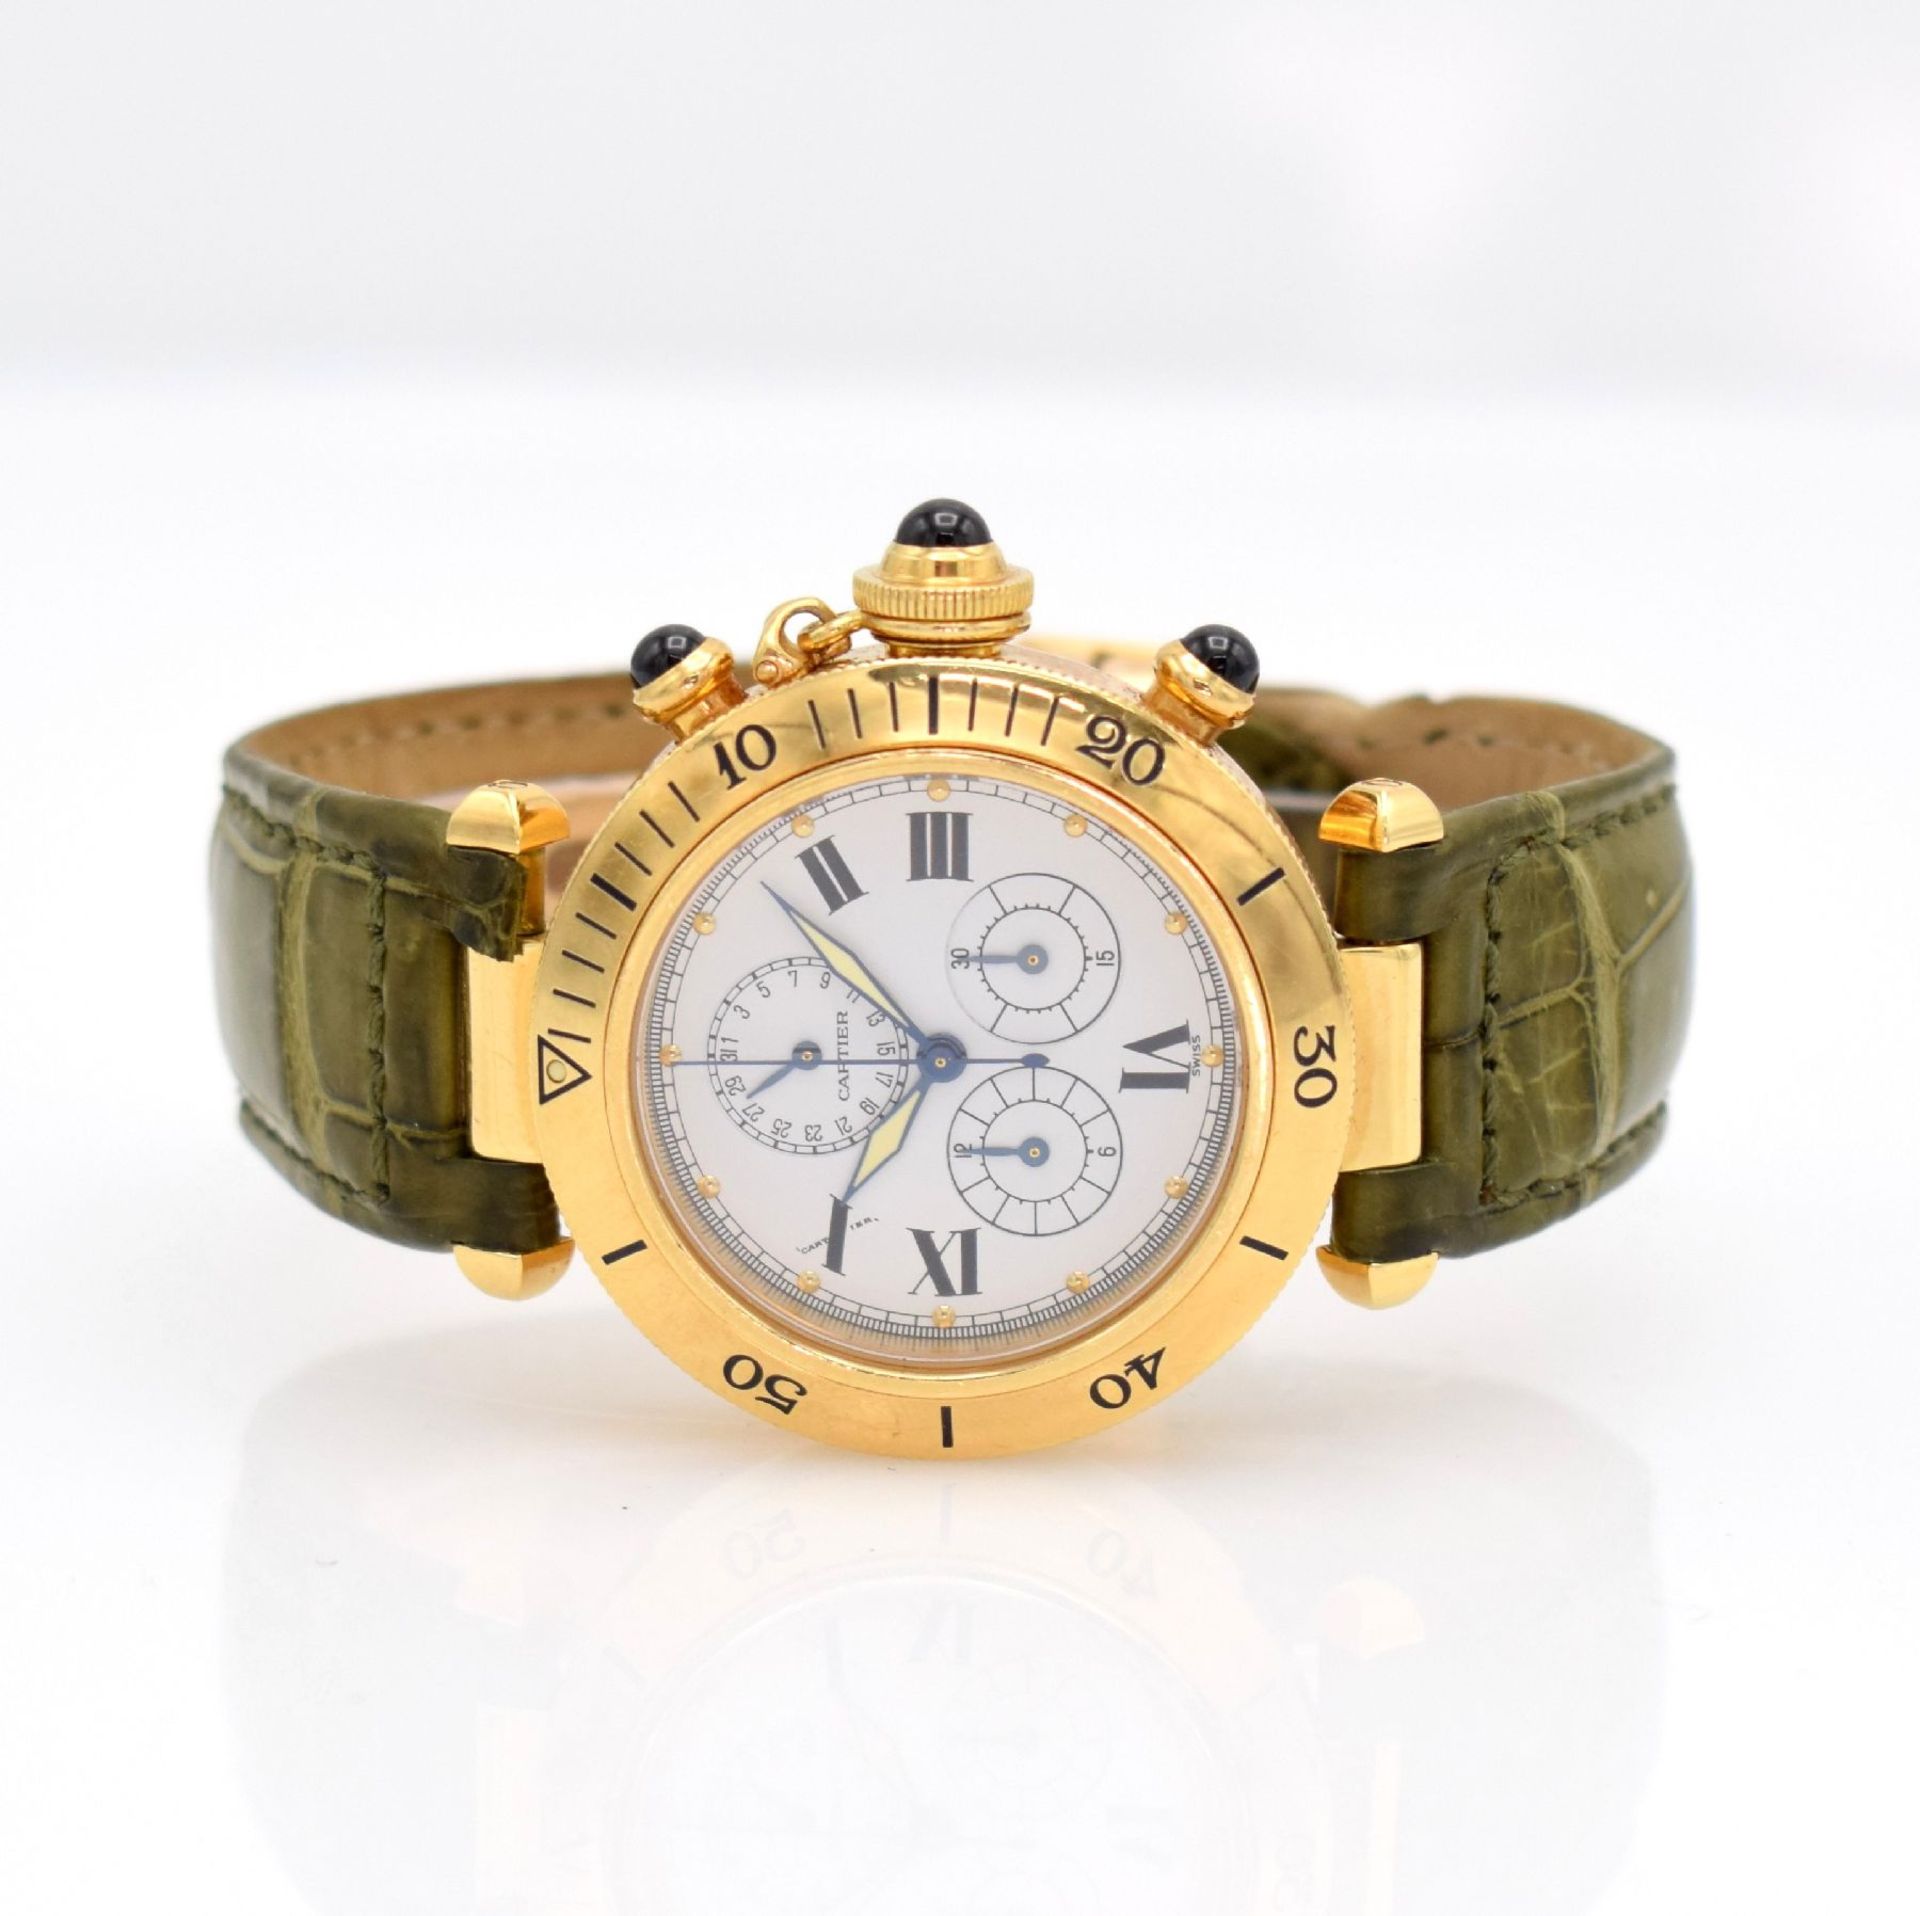 CARTIER Armbandchronograph Serie Pasha in GG 750/000, Schweiz um 2000, Ref. 1353.1, quarz,